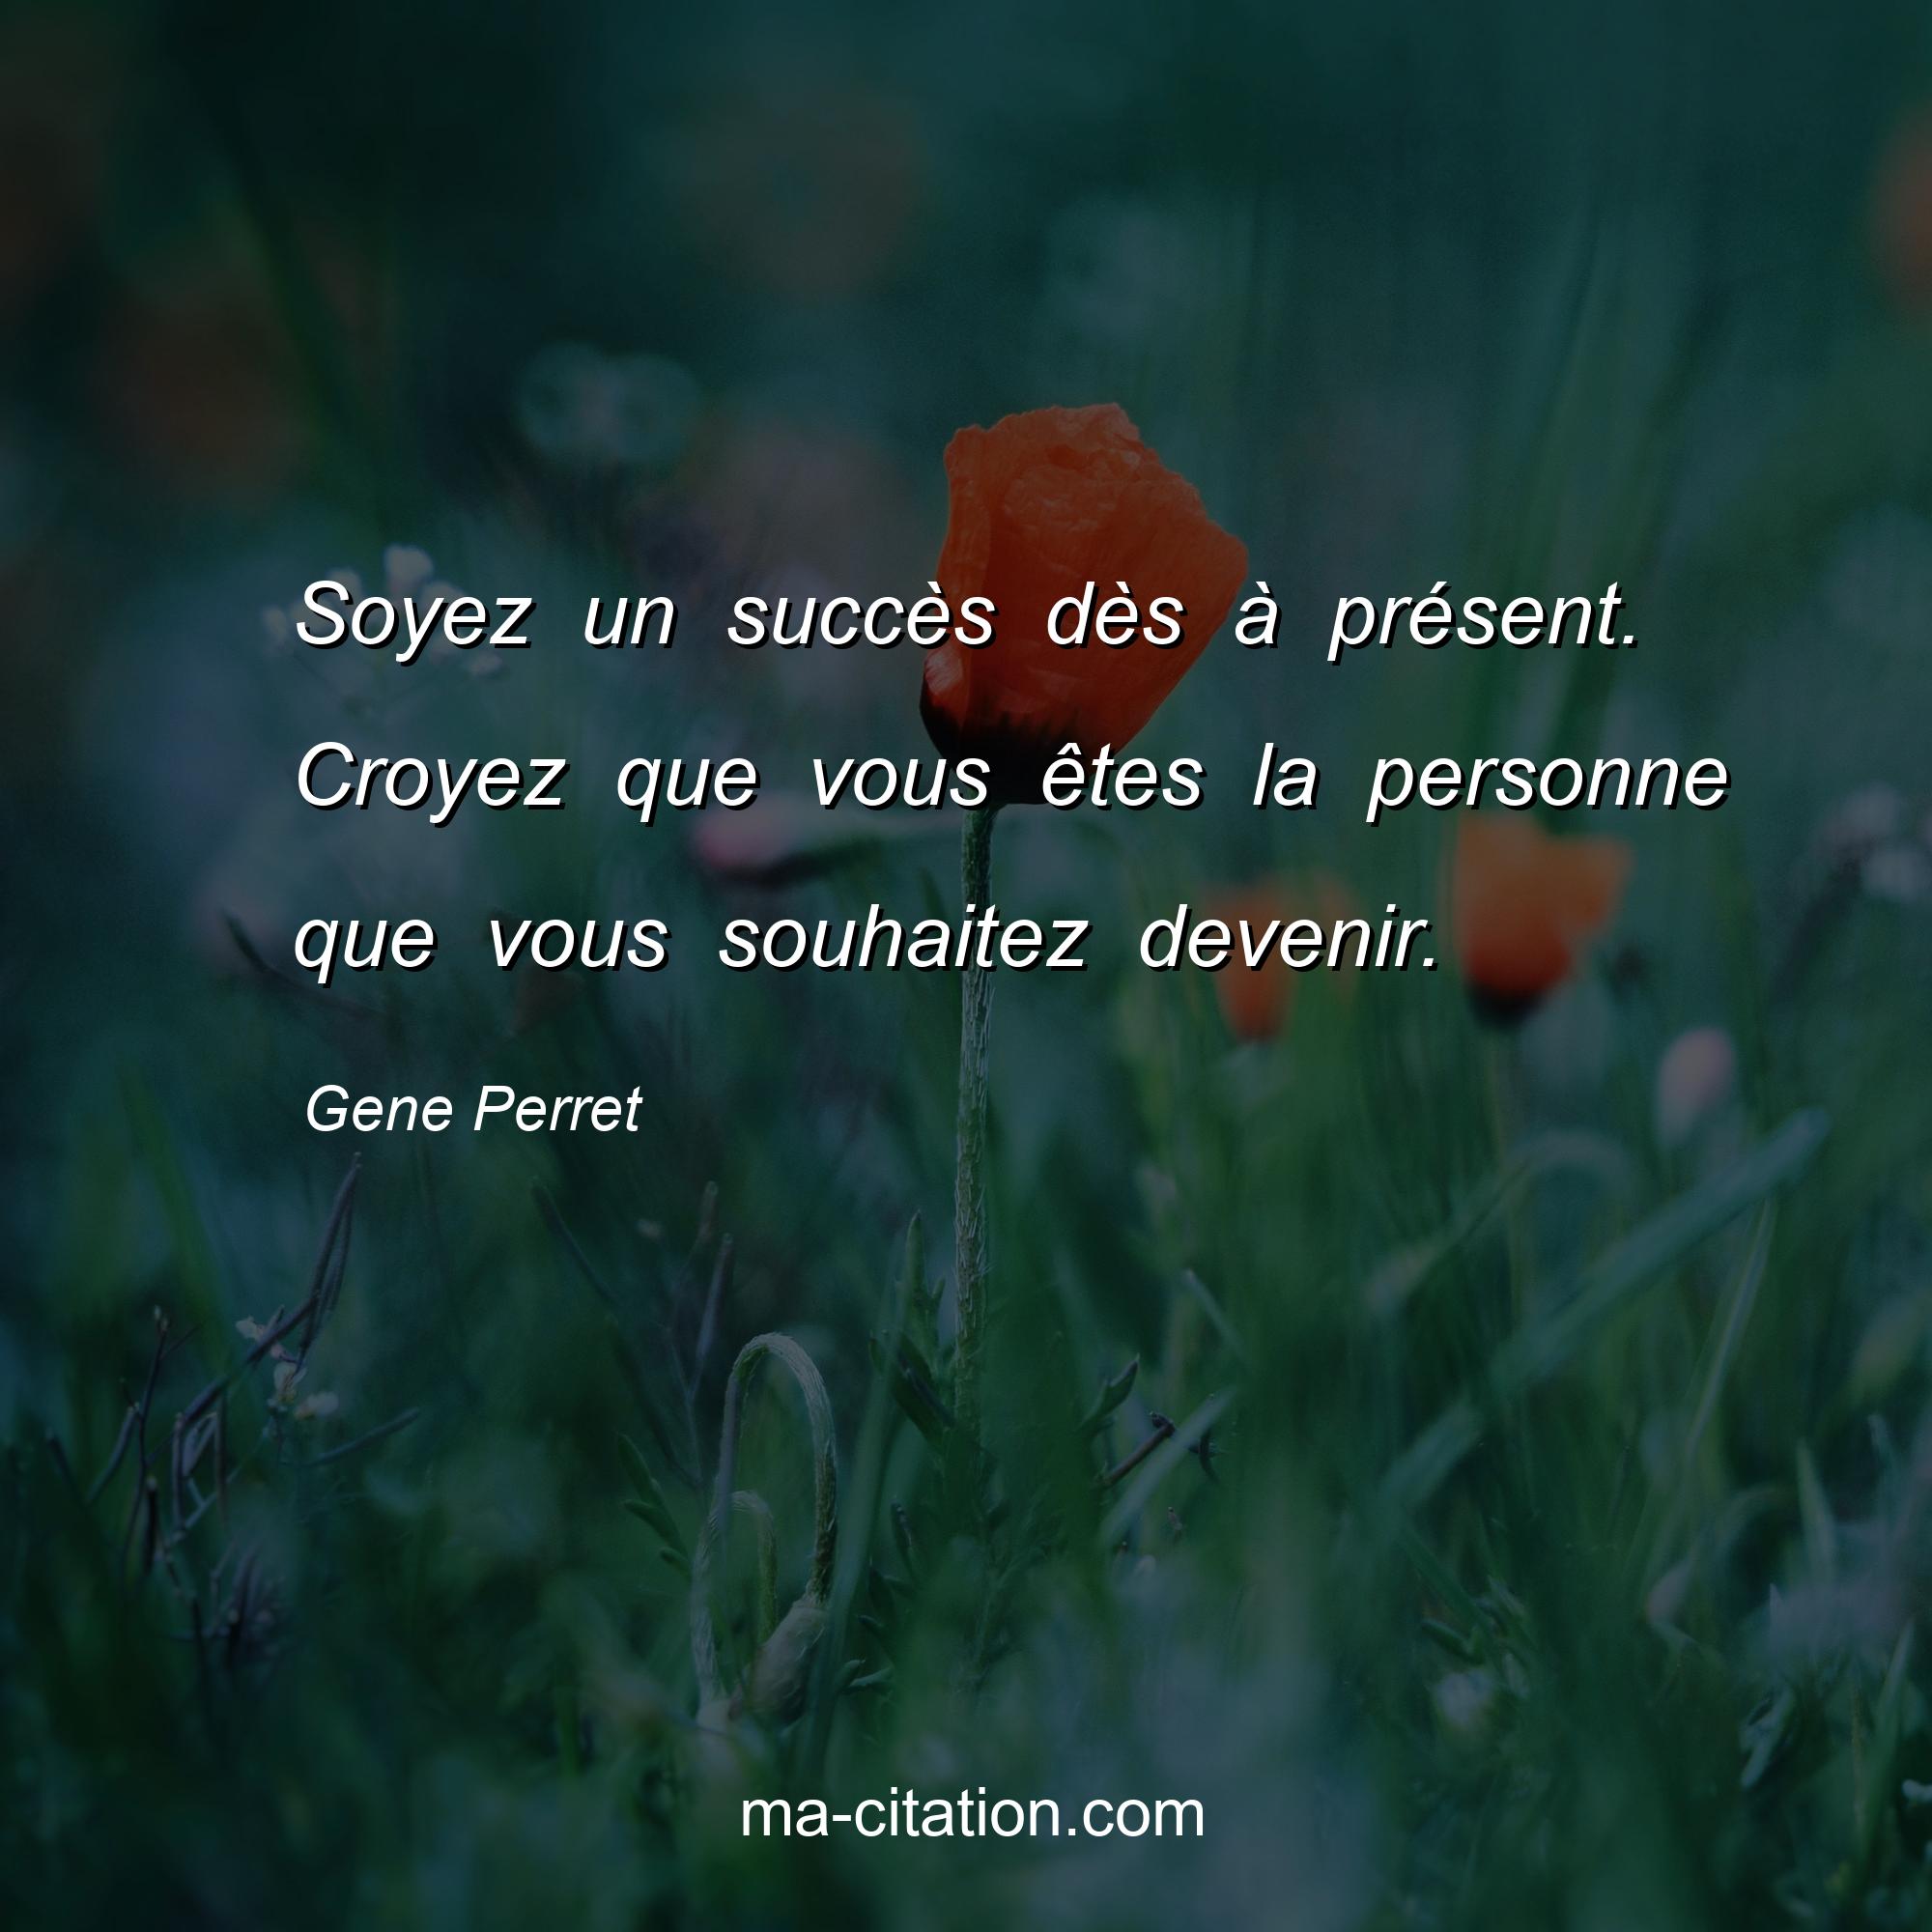 Gene Perret : Soyez un succès dès à présent. Croyez que vous êtes la personne que vous souhaitez devenir.